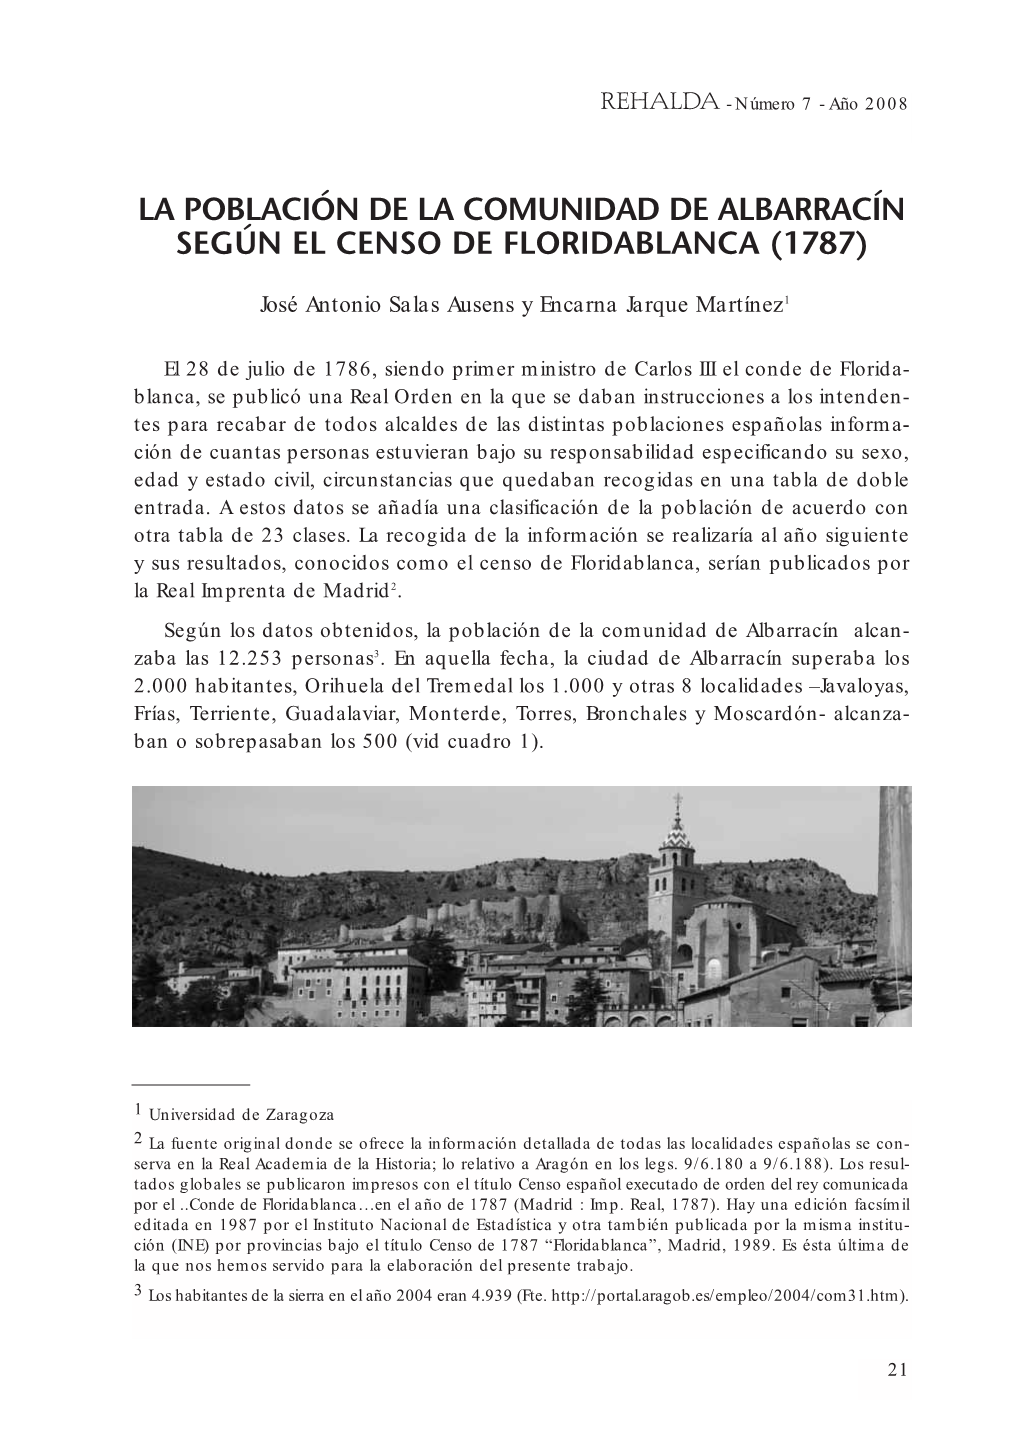 La Población De La Comunidad De Albarracín Según El Censo De Floridablanca (1787)